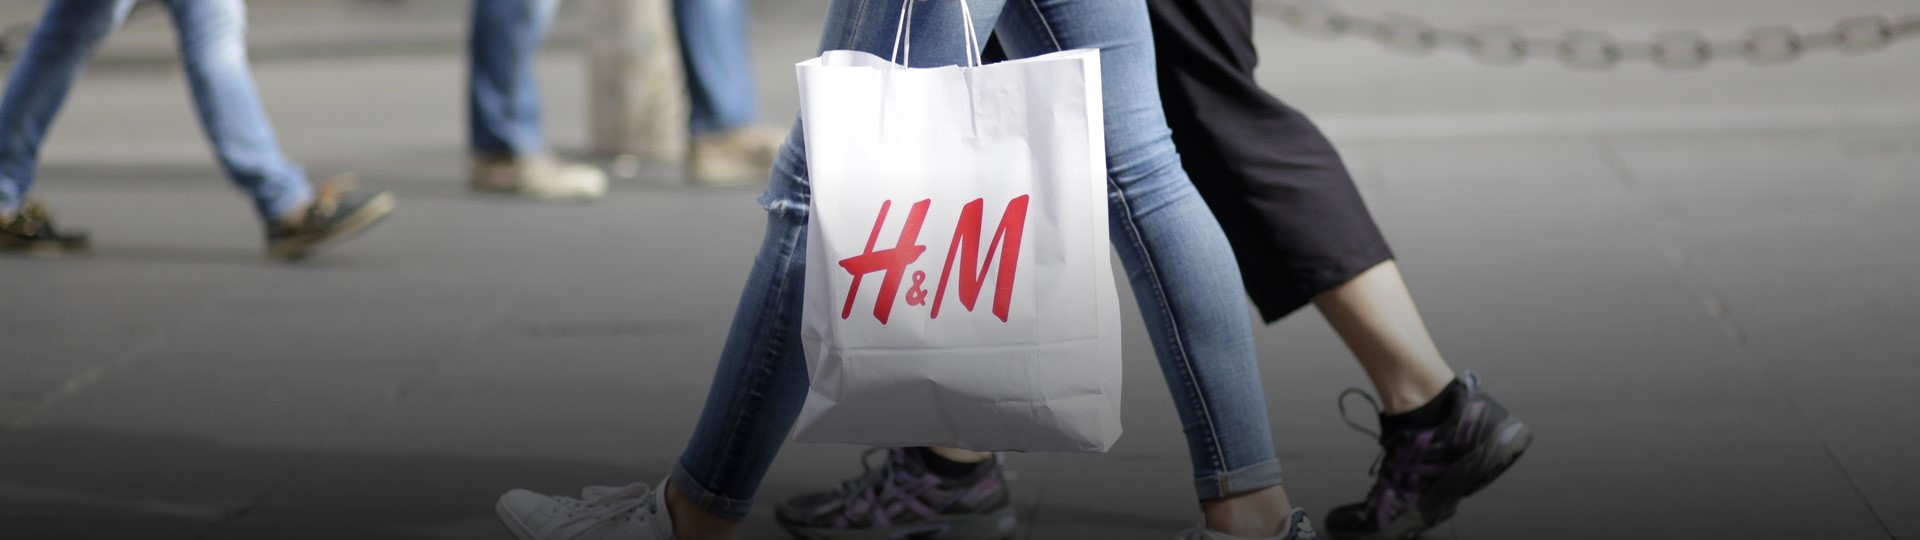 Oděvnímu řetězci H&M dál klesají tržby, internet moc nepomohl